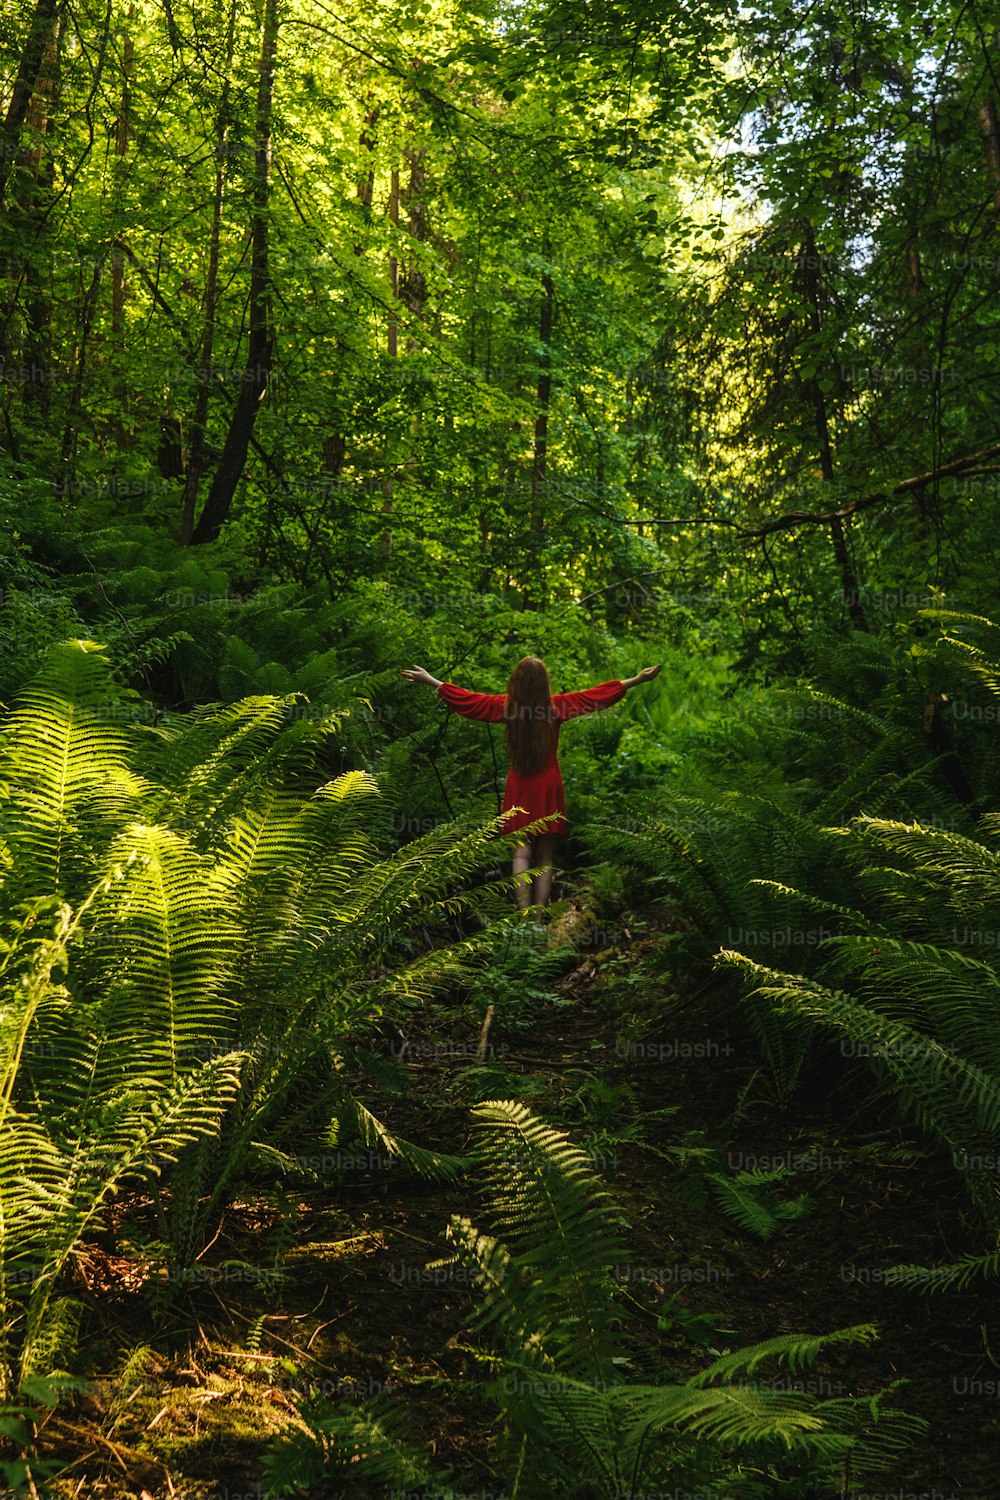 Die junge Frau im roten Kleid Rückansicht im Wald mit Farn. Konzept von Natur und glücklichem Leben, Abenteuer. Schönes Licht.